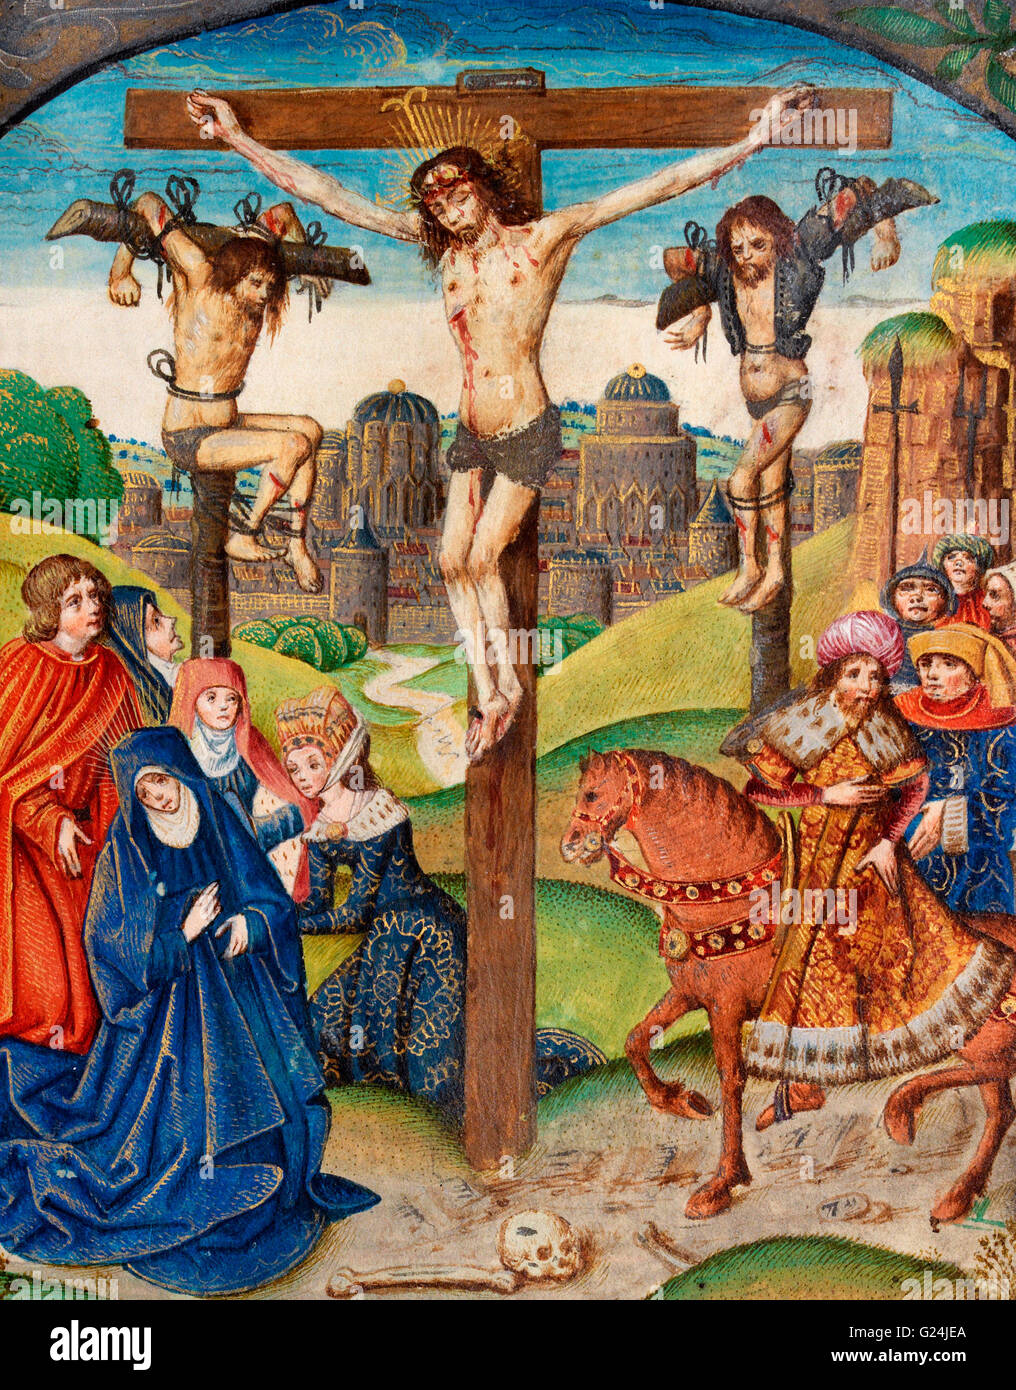 La Crucifixion. Le Christ sur la croix entre deux voleurs. Illumination du Château du 16ème siècle, passionnelle Banque D'Images